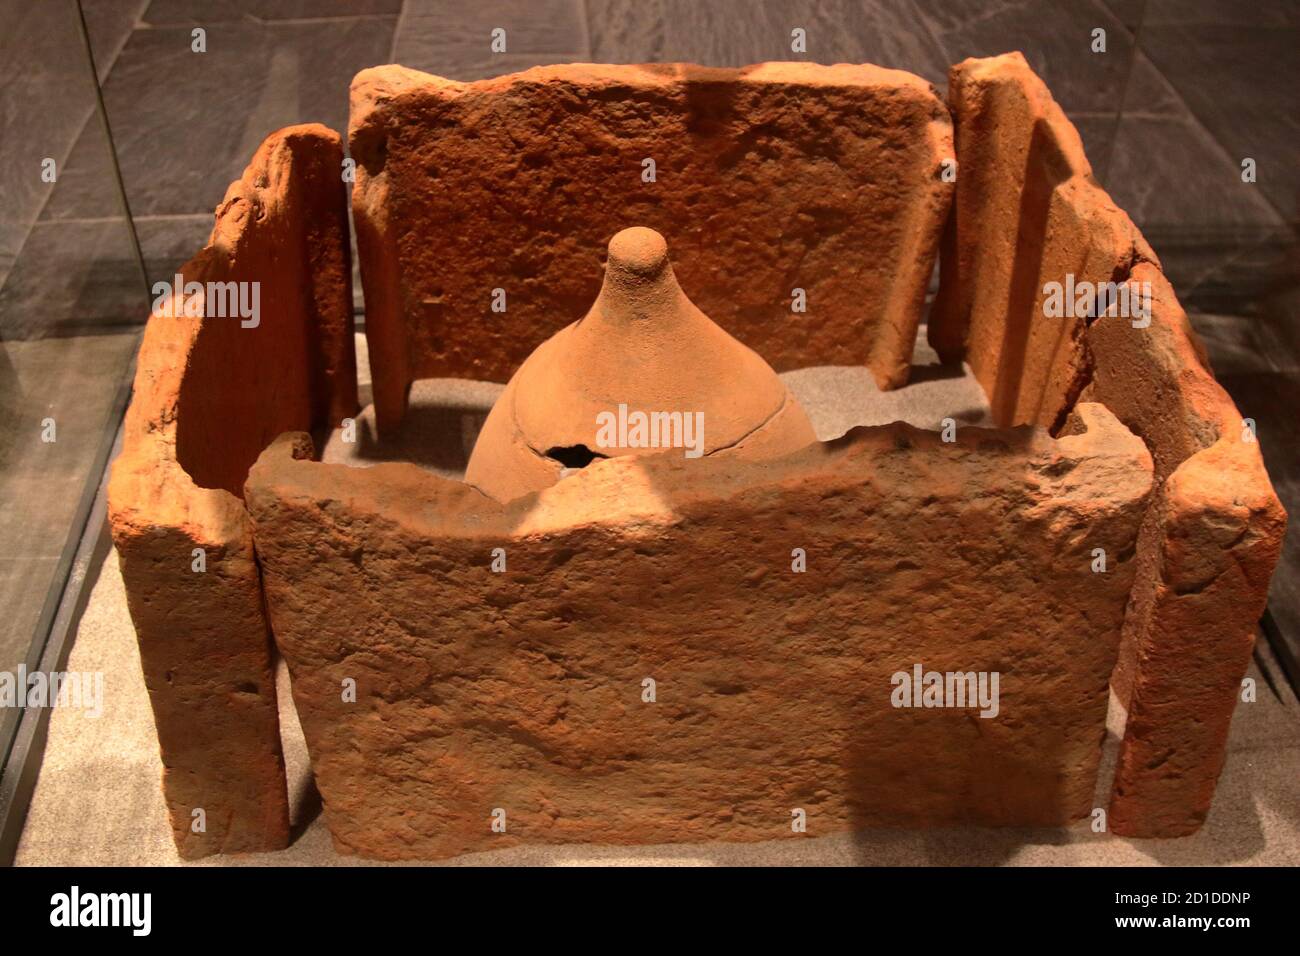 Musée archéologique de LaSpezia, Italie - été 2020 : tombe incinérée d'argile et de carreaux, premier siècle av. J.-C. Banque D'Images